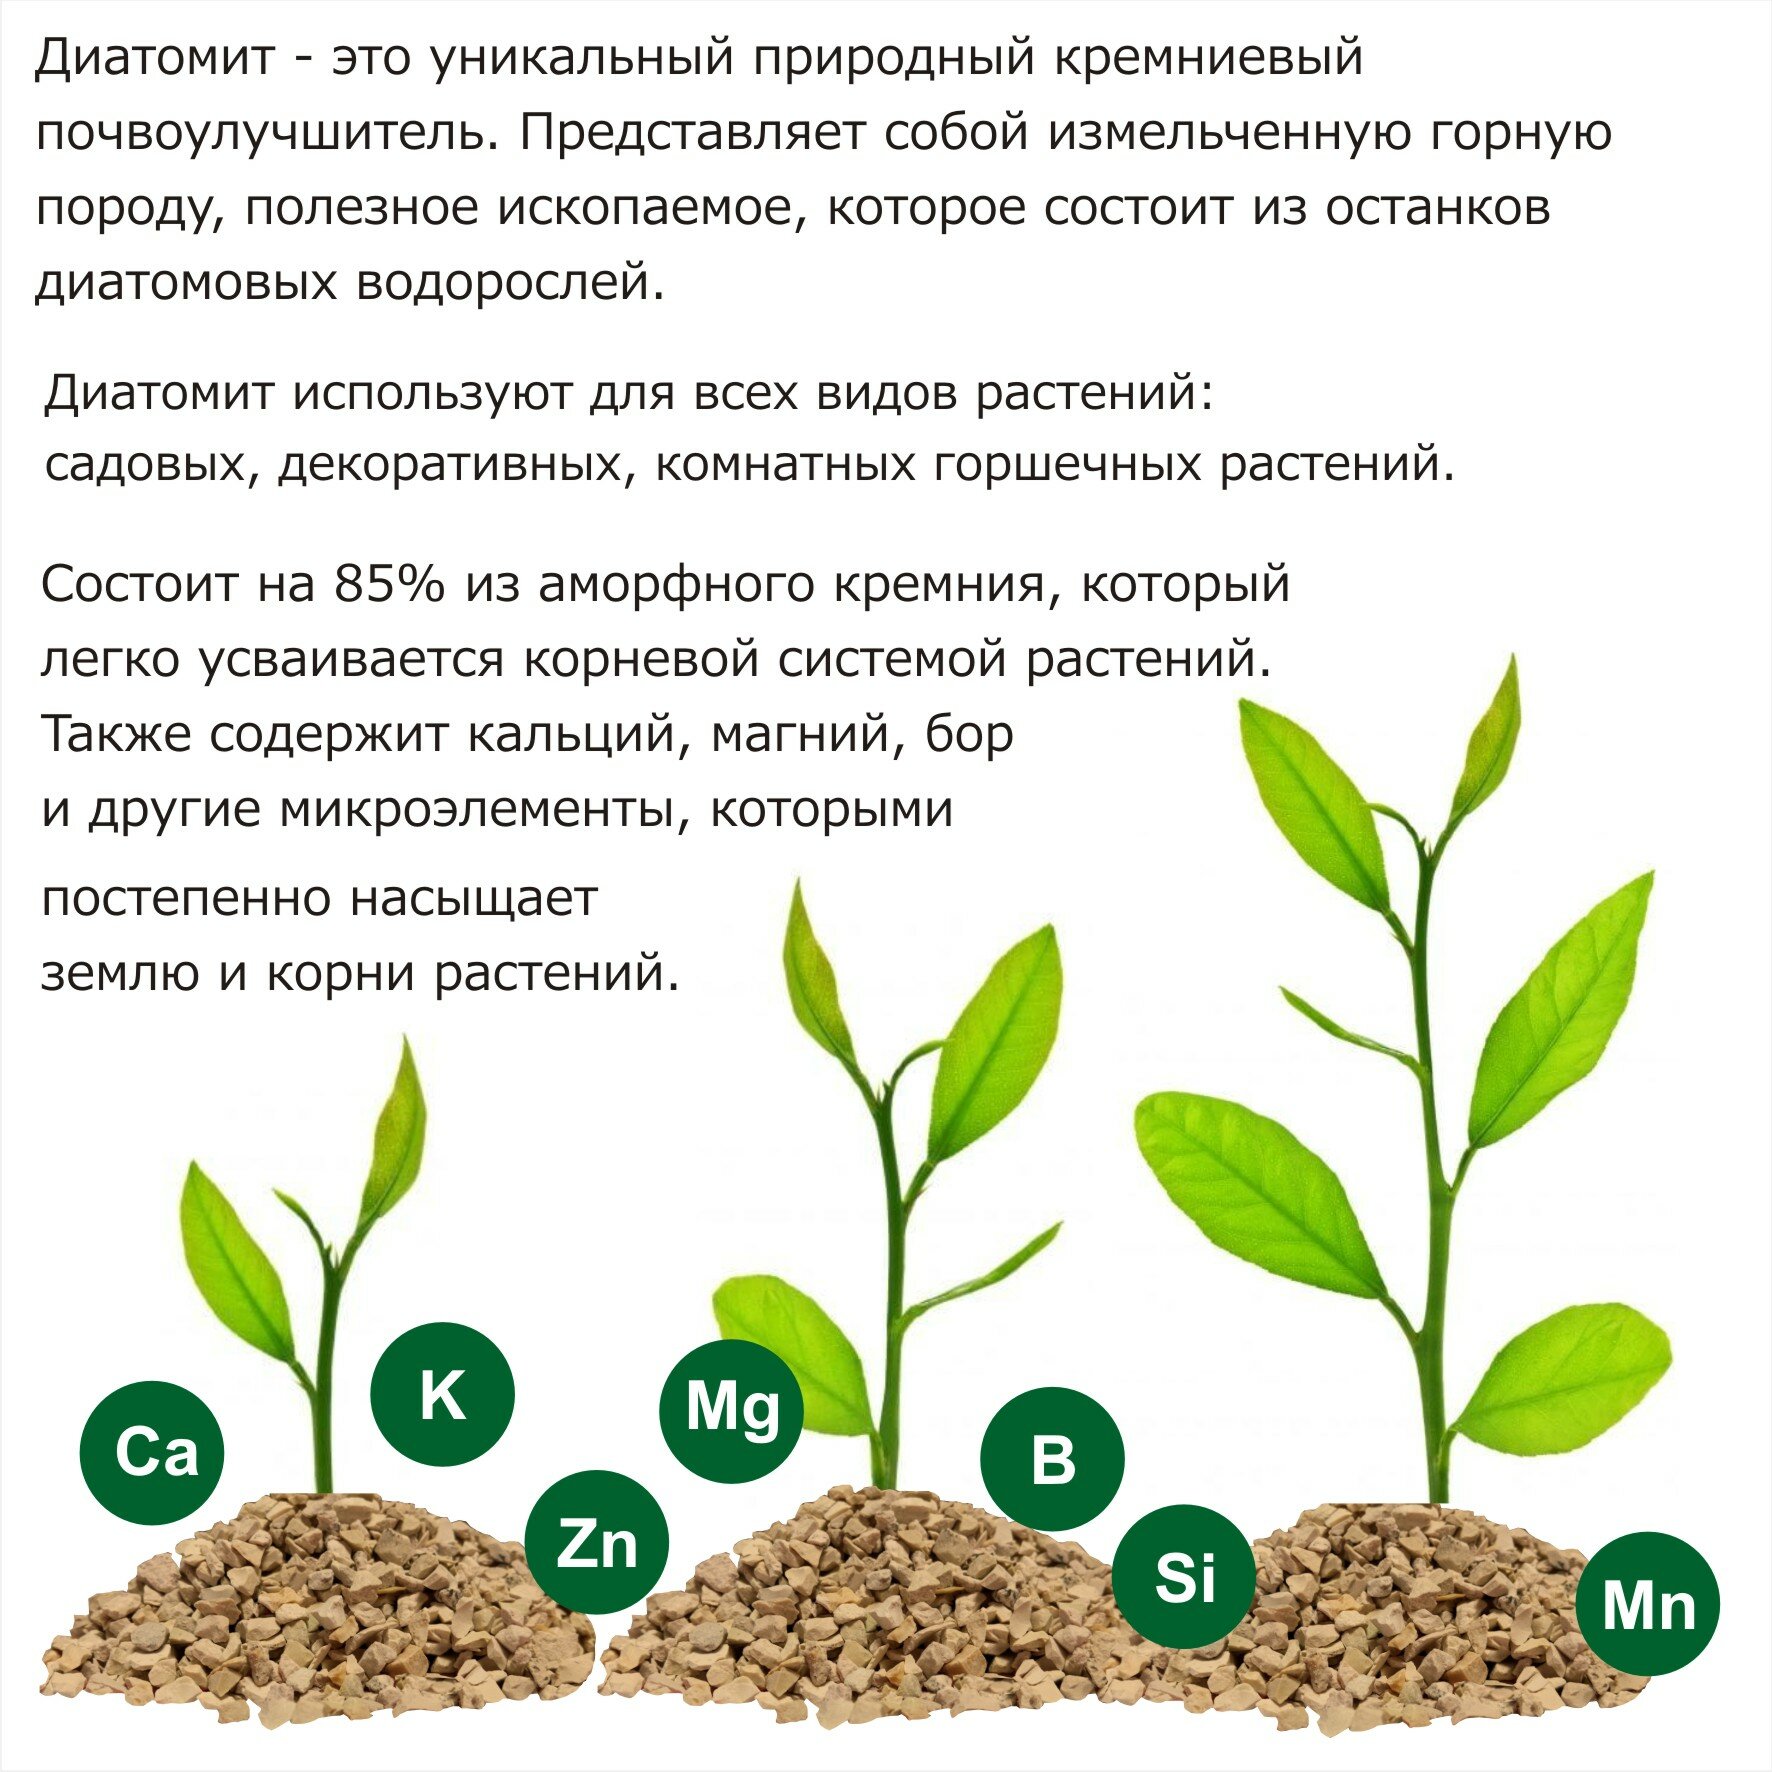 Диатомит садовый, фракция 3-5 мм, 2,8 кг / натуральное кремниевое удобрение для растений / почвоулучшитель для сада, огорода, комнатных растений